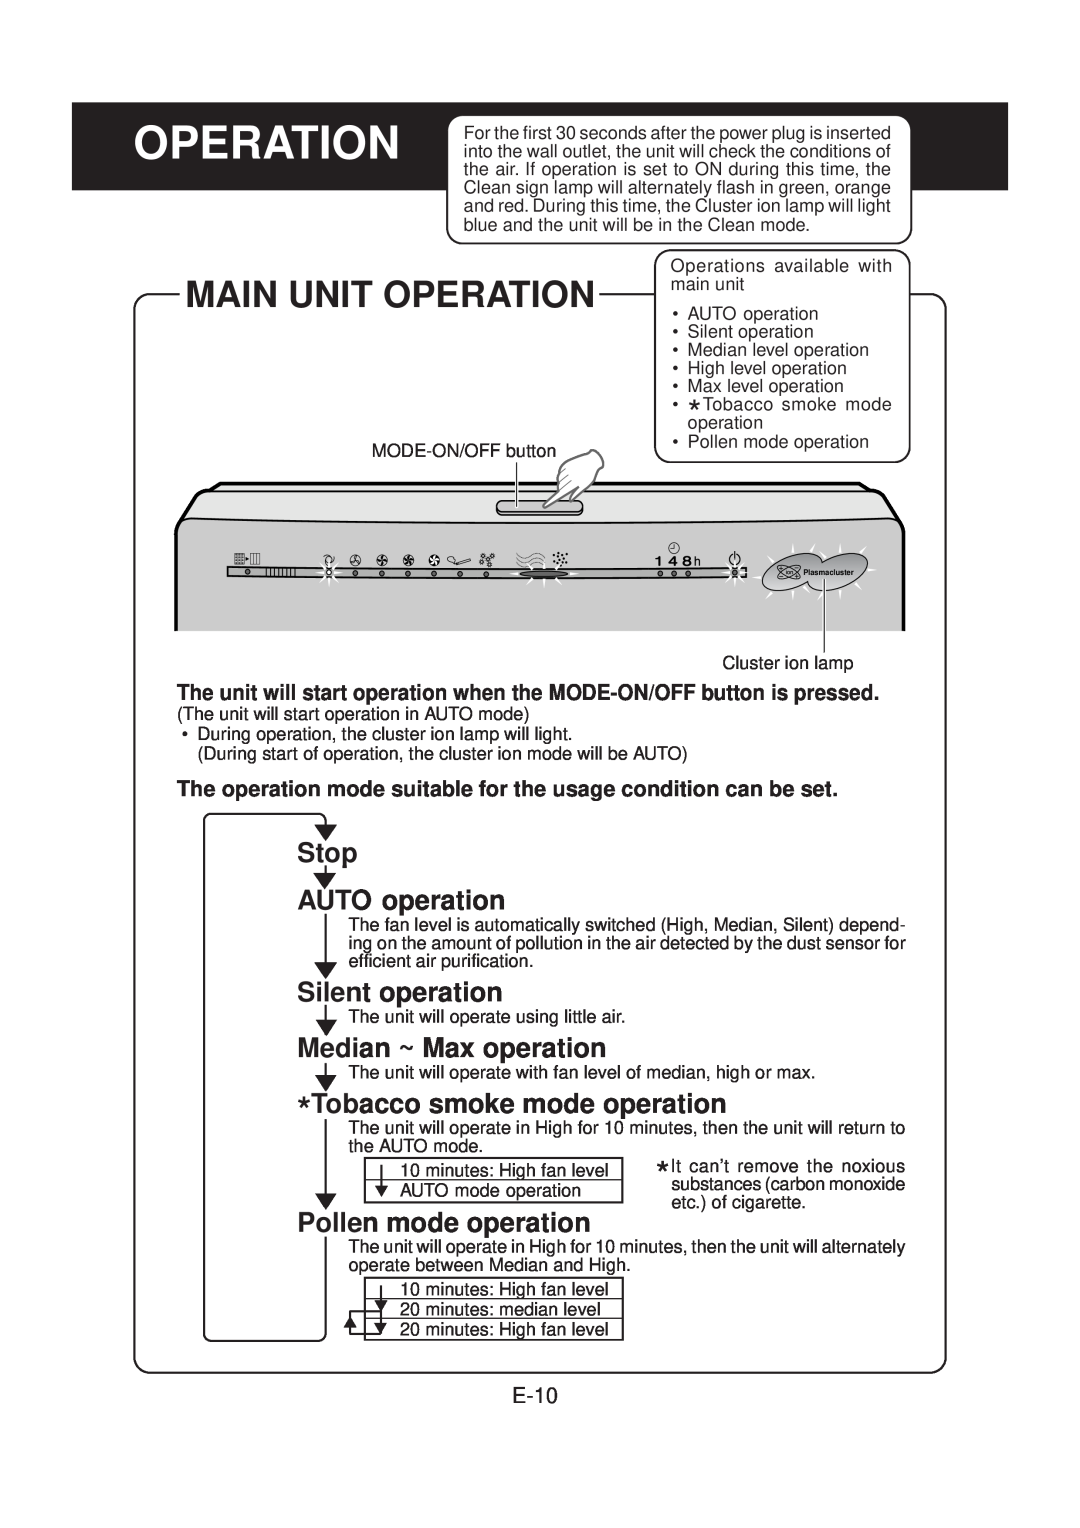 Sharp FU-40SE operation manual Main Unit Operation, Stop AUTO operation, Silent operation, Median ~ Max operation, E-10 